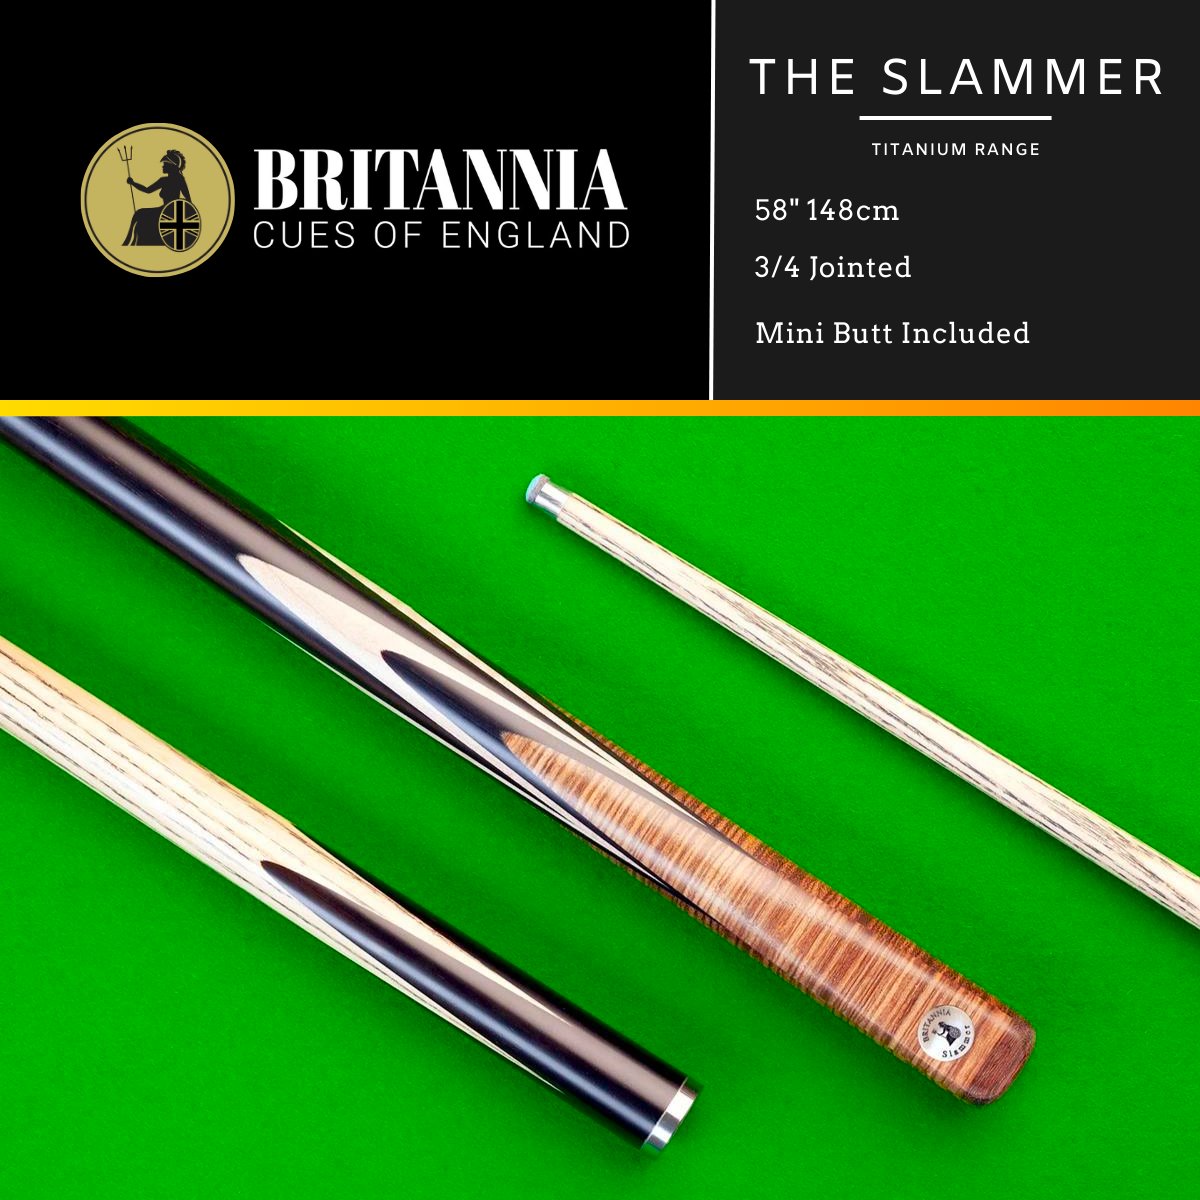 Britannia 3/4 Jointed Slammer Titanium Snooker Cue